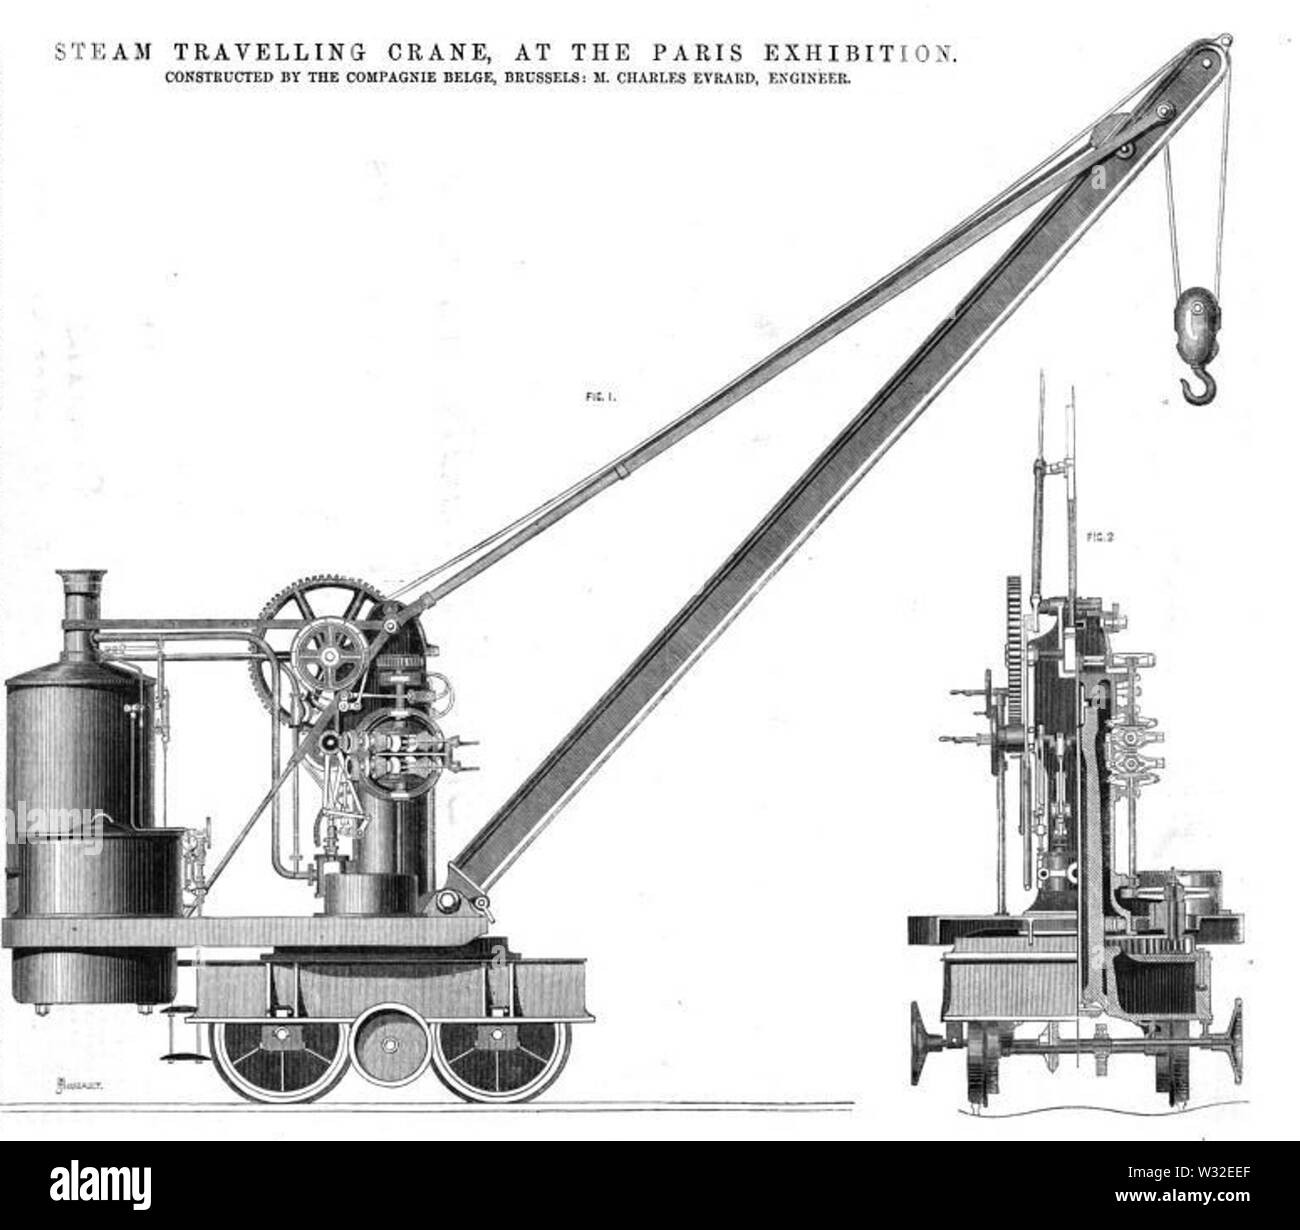 Grue à vapeur, la Compagnie Belge (Charles Evrard), l'Exposition de Paris, 1867 Banque D'Images